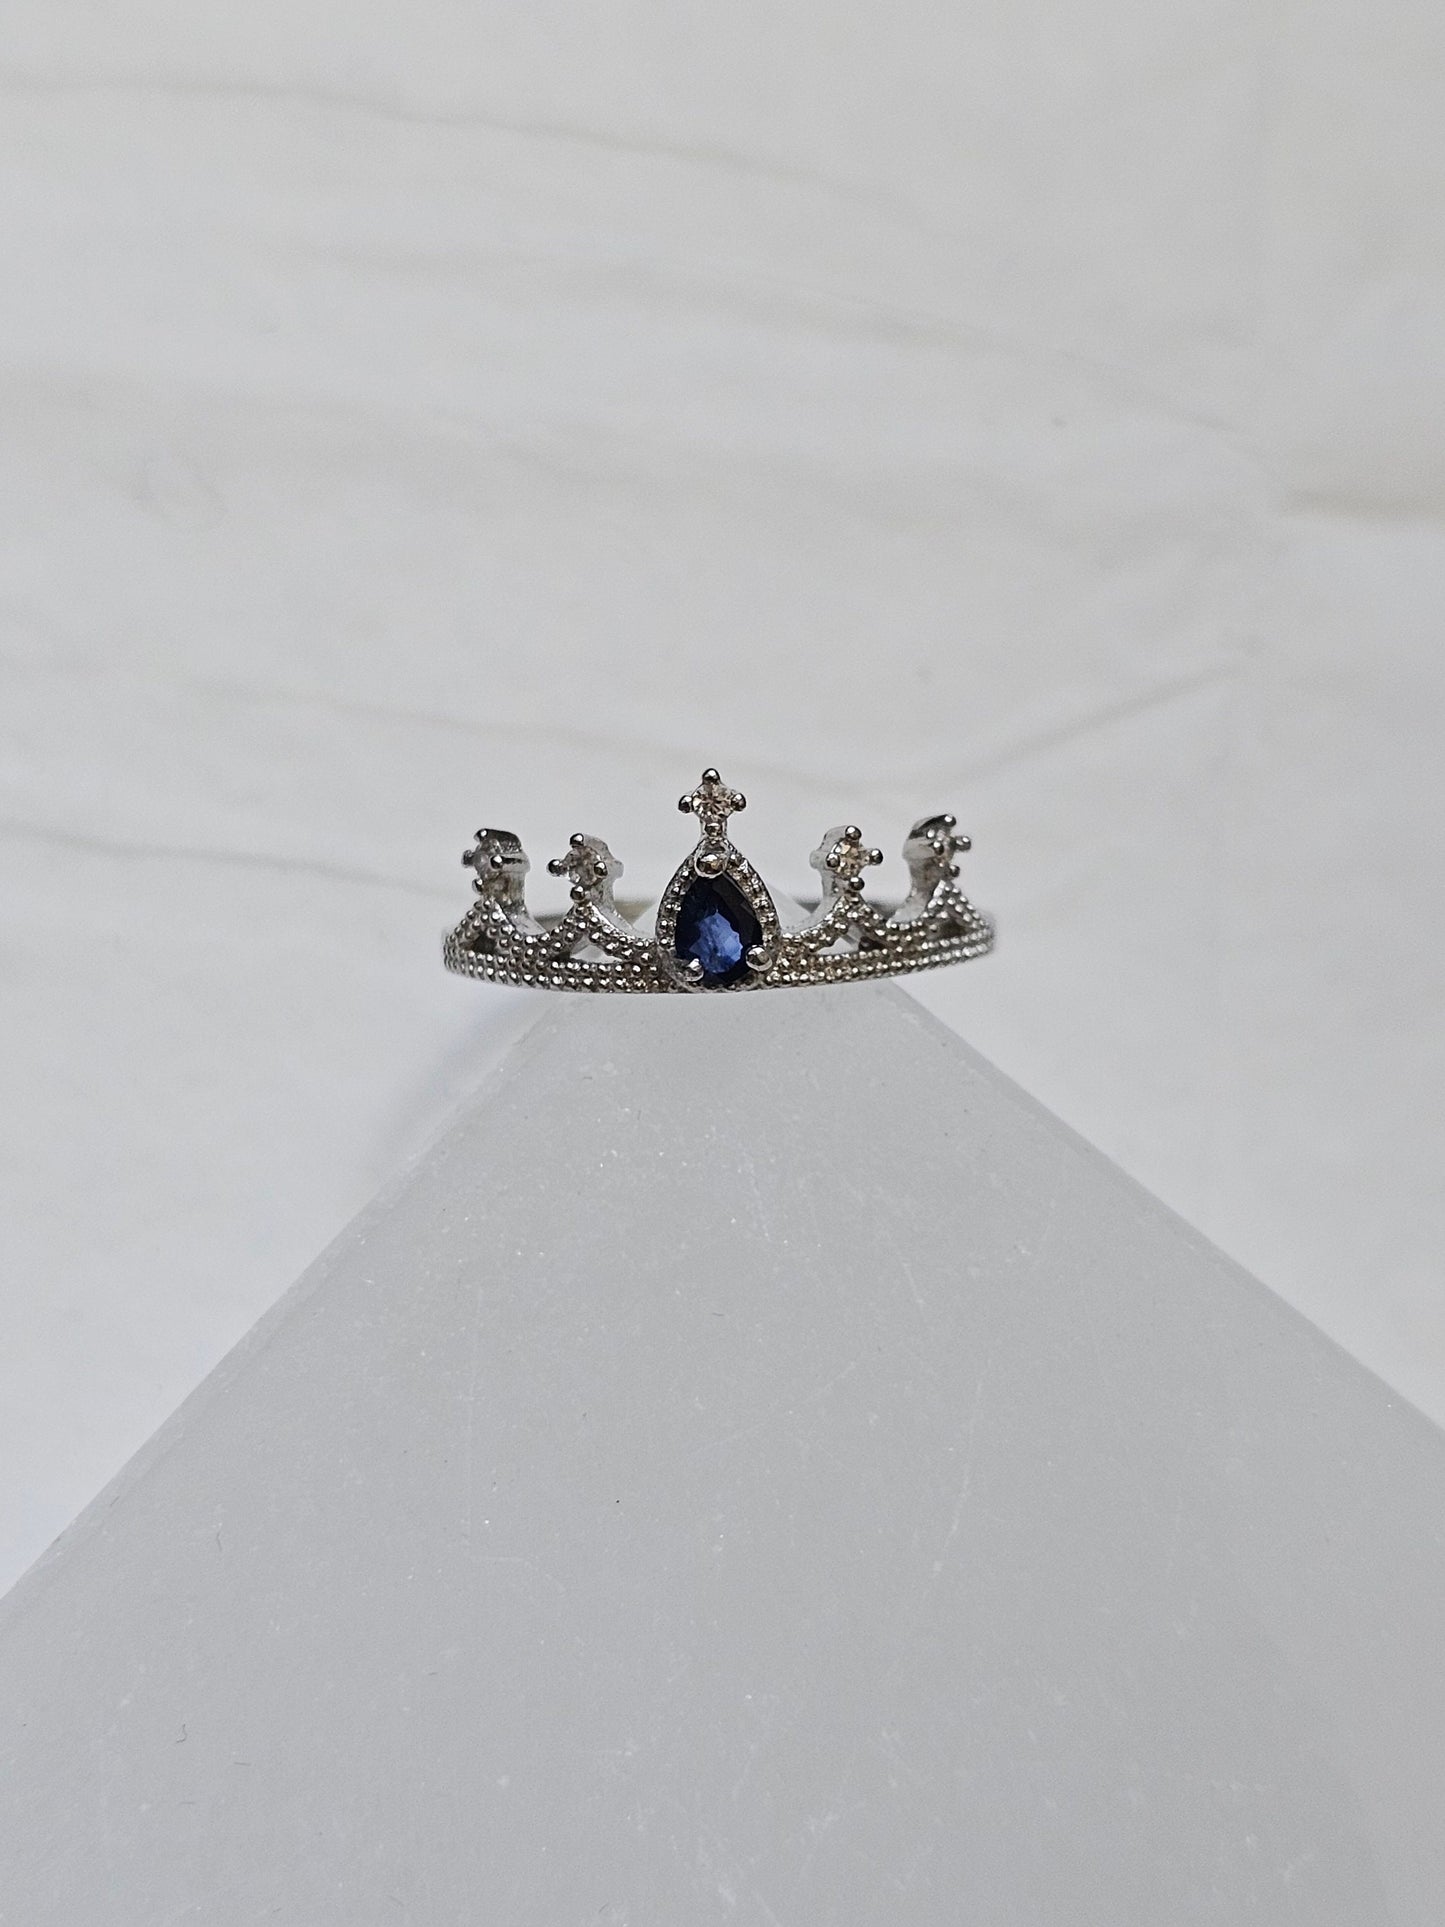 Tanzanite Crown adjustable ring